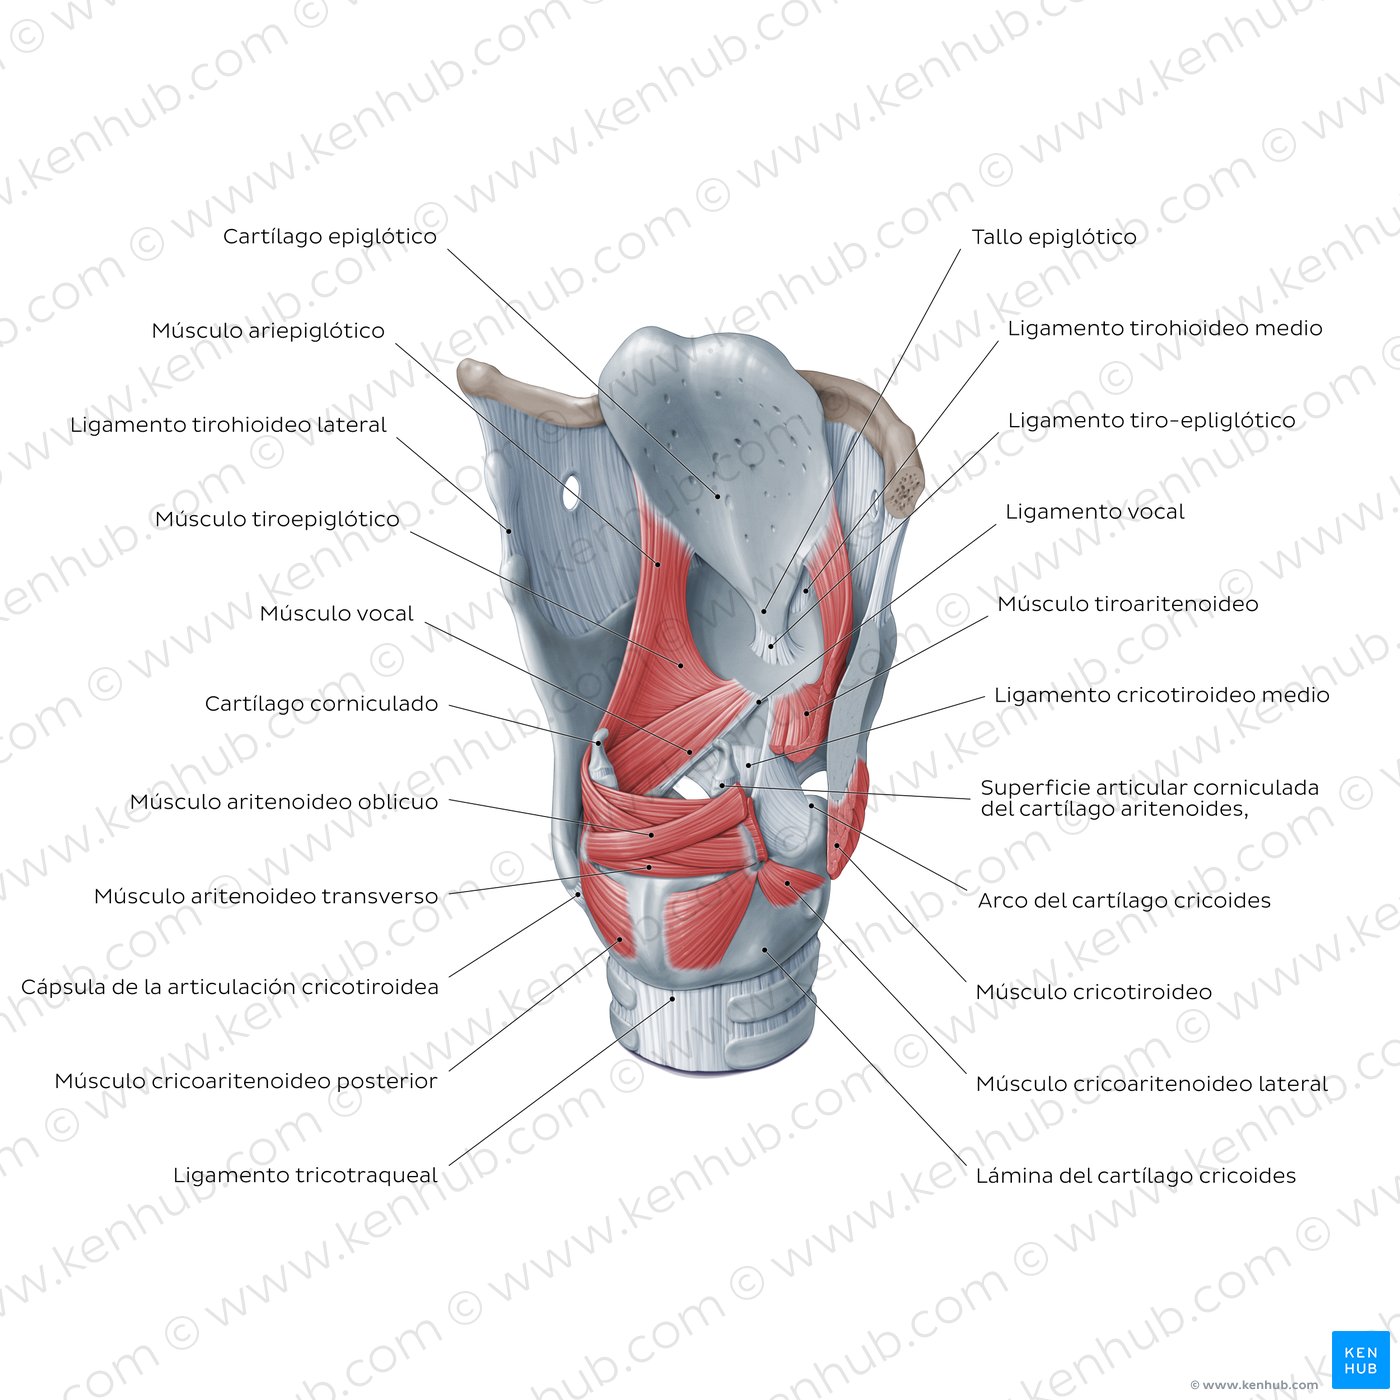 Diagrama de una vista posterolateral de la laringe, mostrando sus cartílagos, ligamentos y músculos